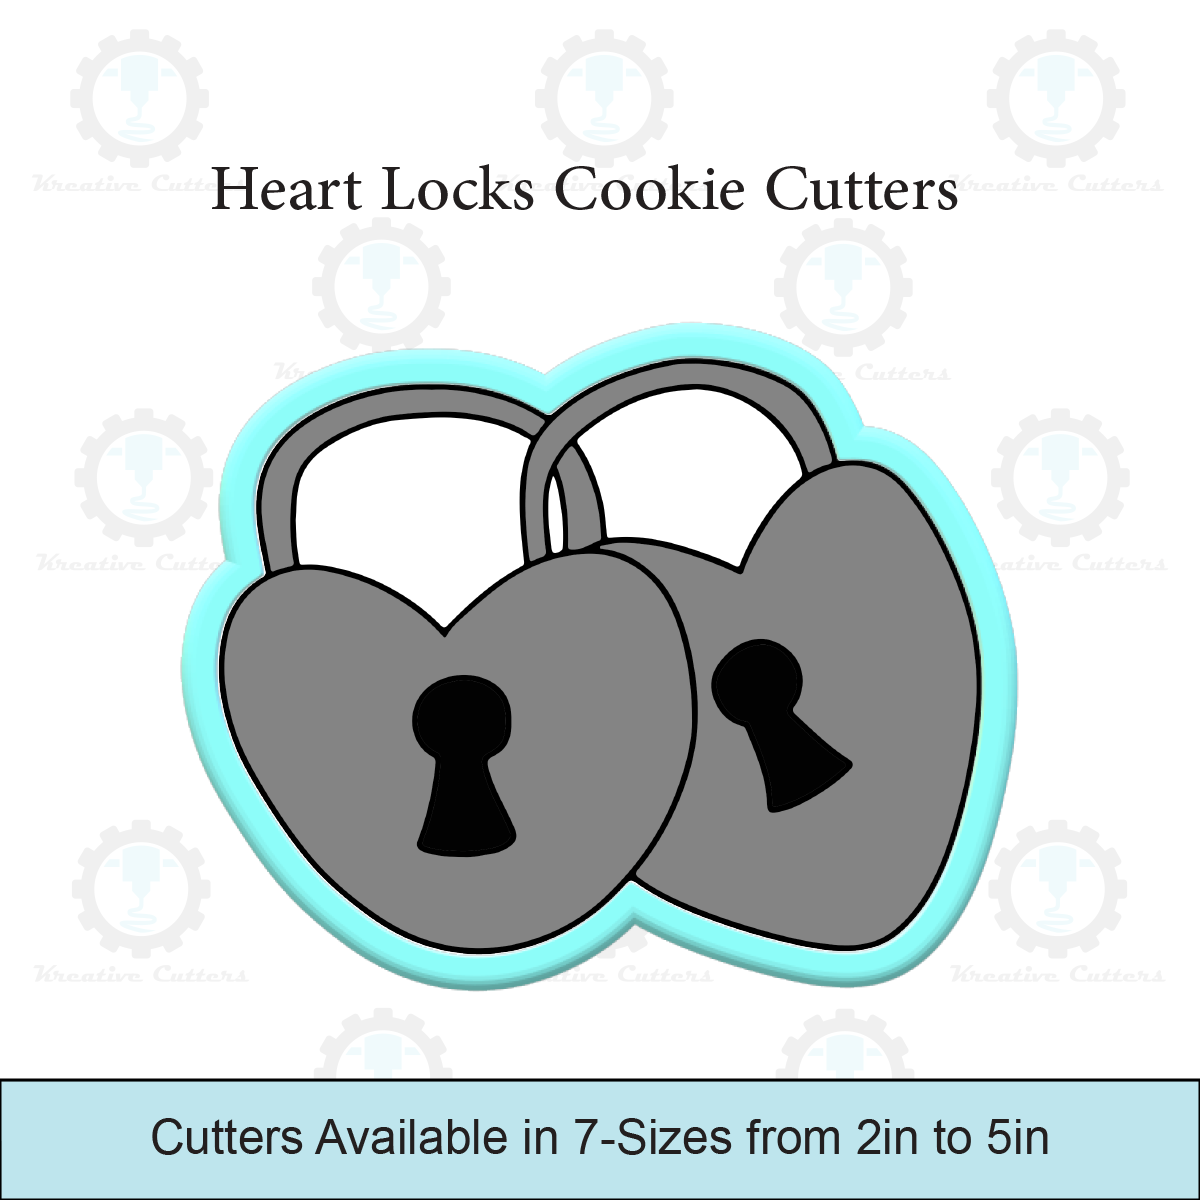 Heart Locks Cookie Cutters